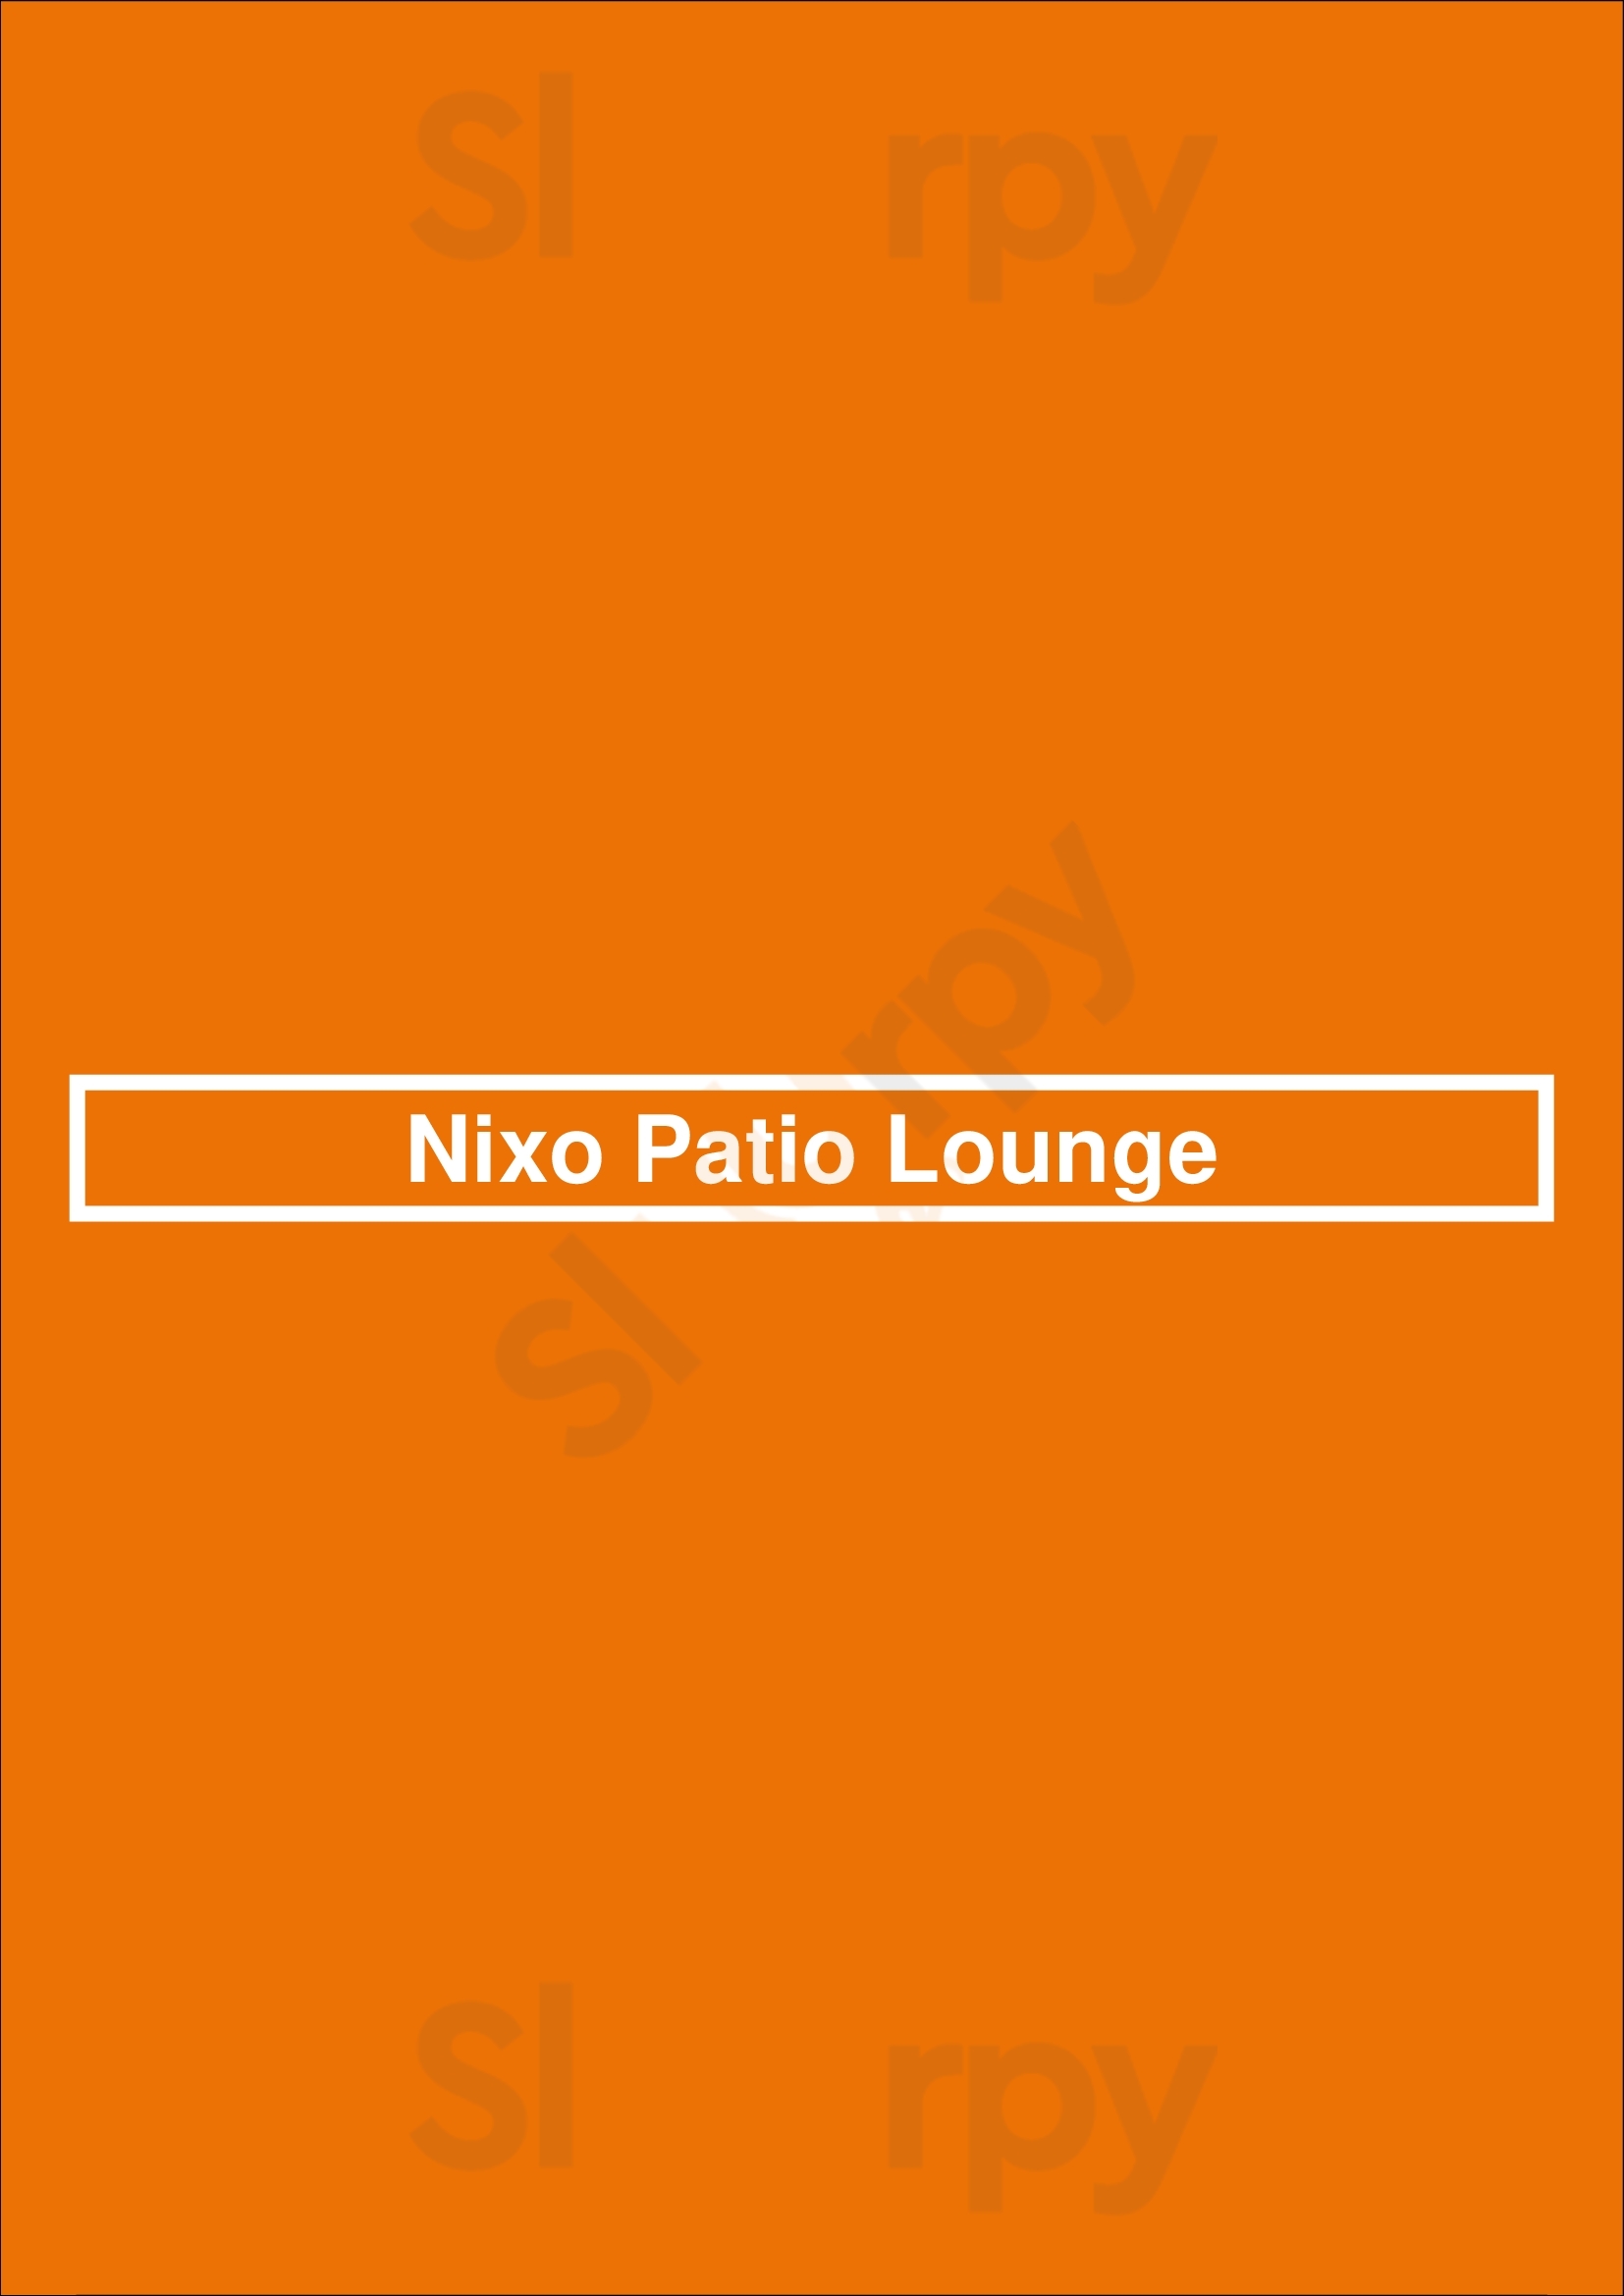 Nixo Patio Lounge Los Angeles Menu - 1